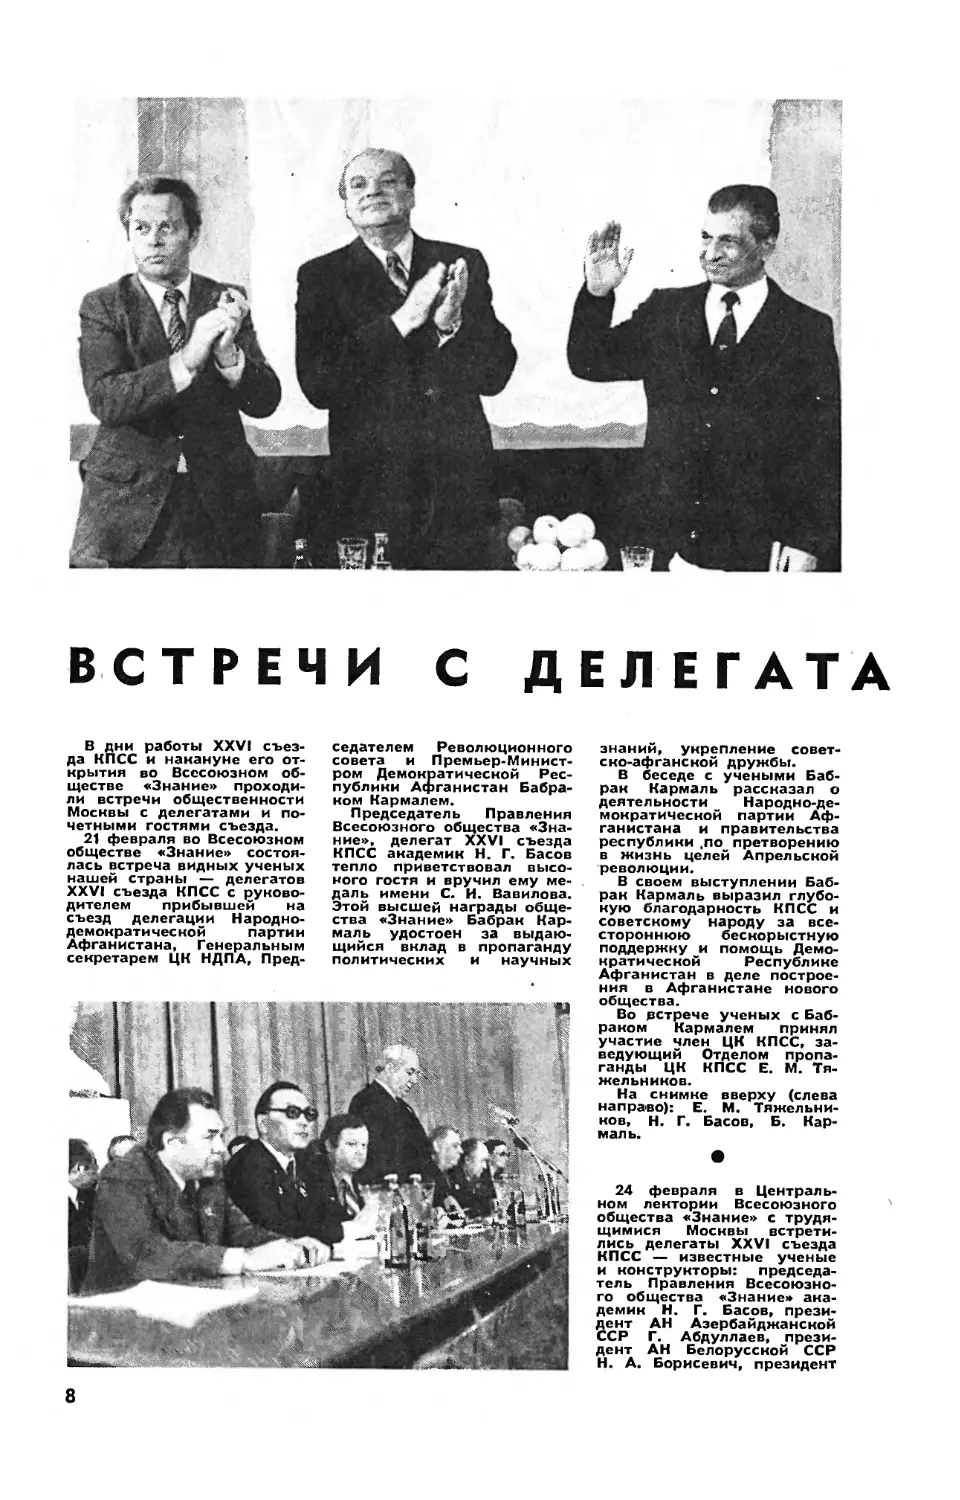 [События дня] — Встречи с делегатами XVI съезда КПСС